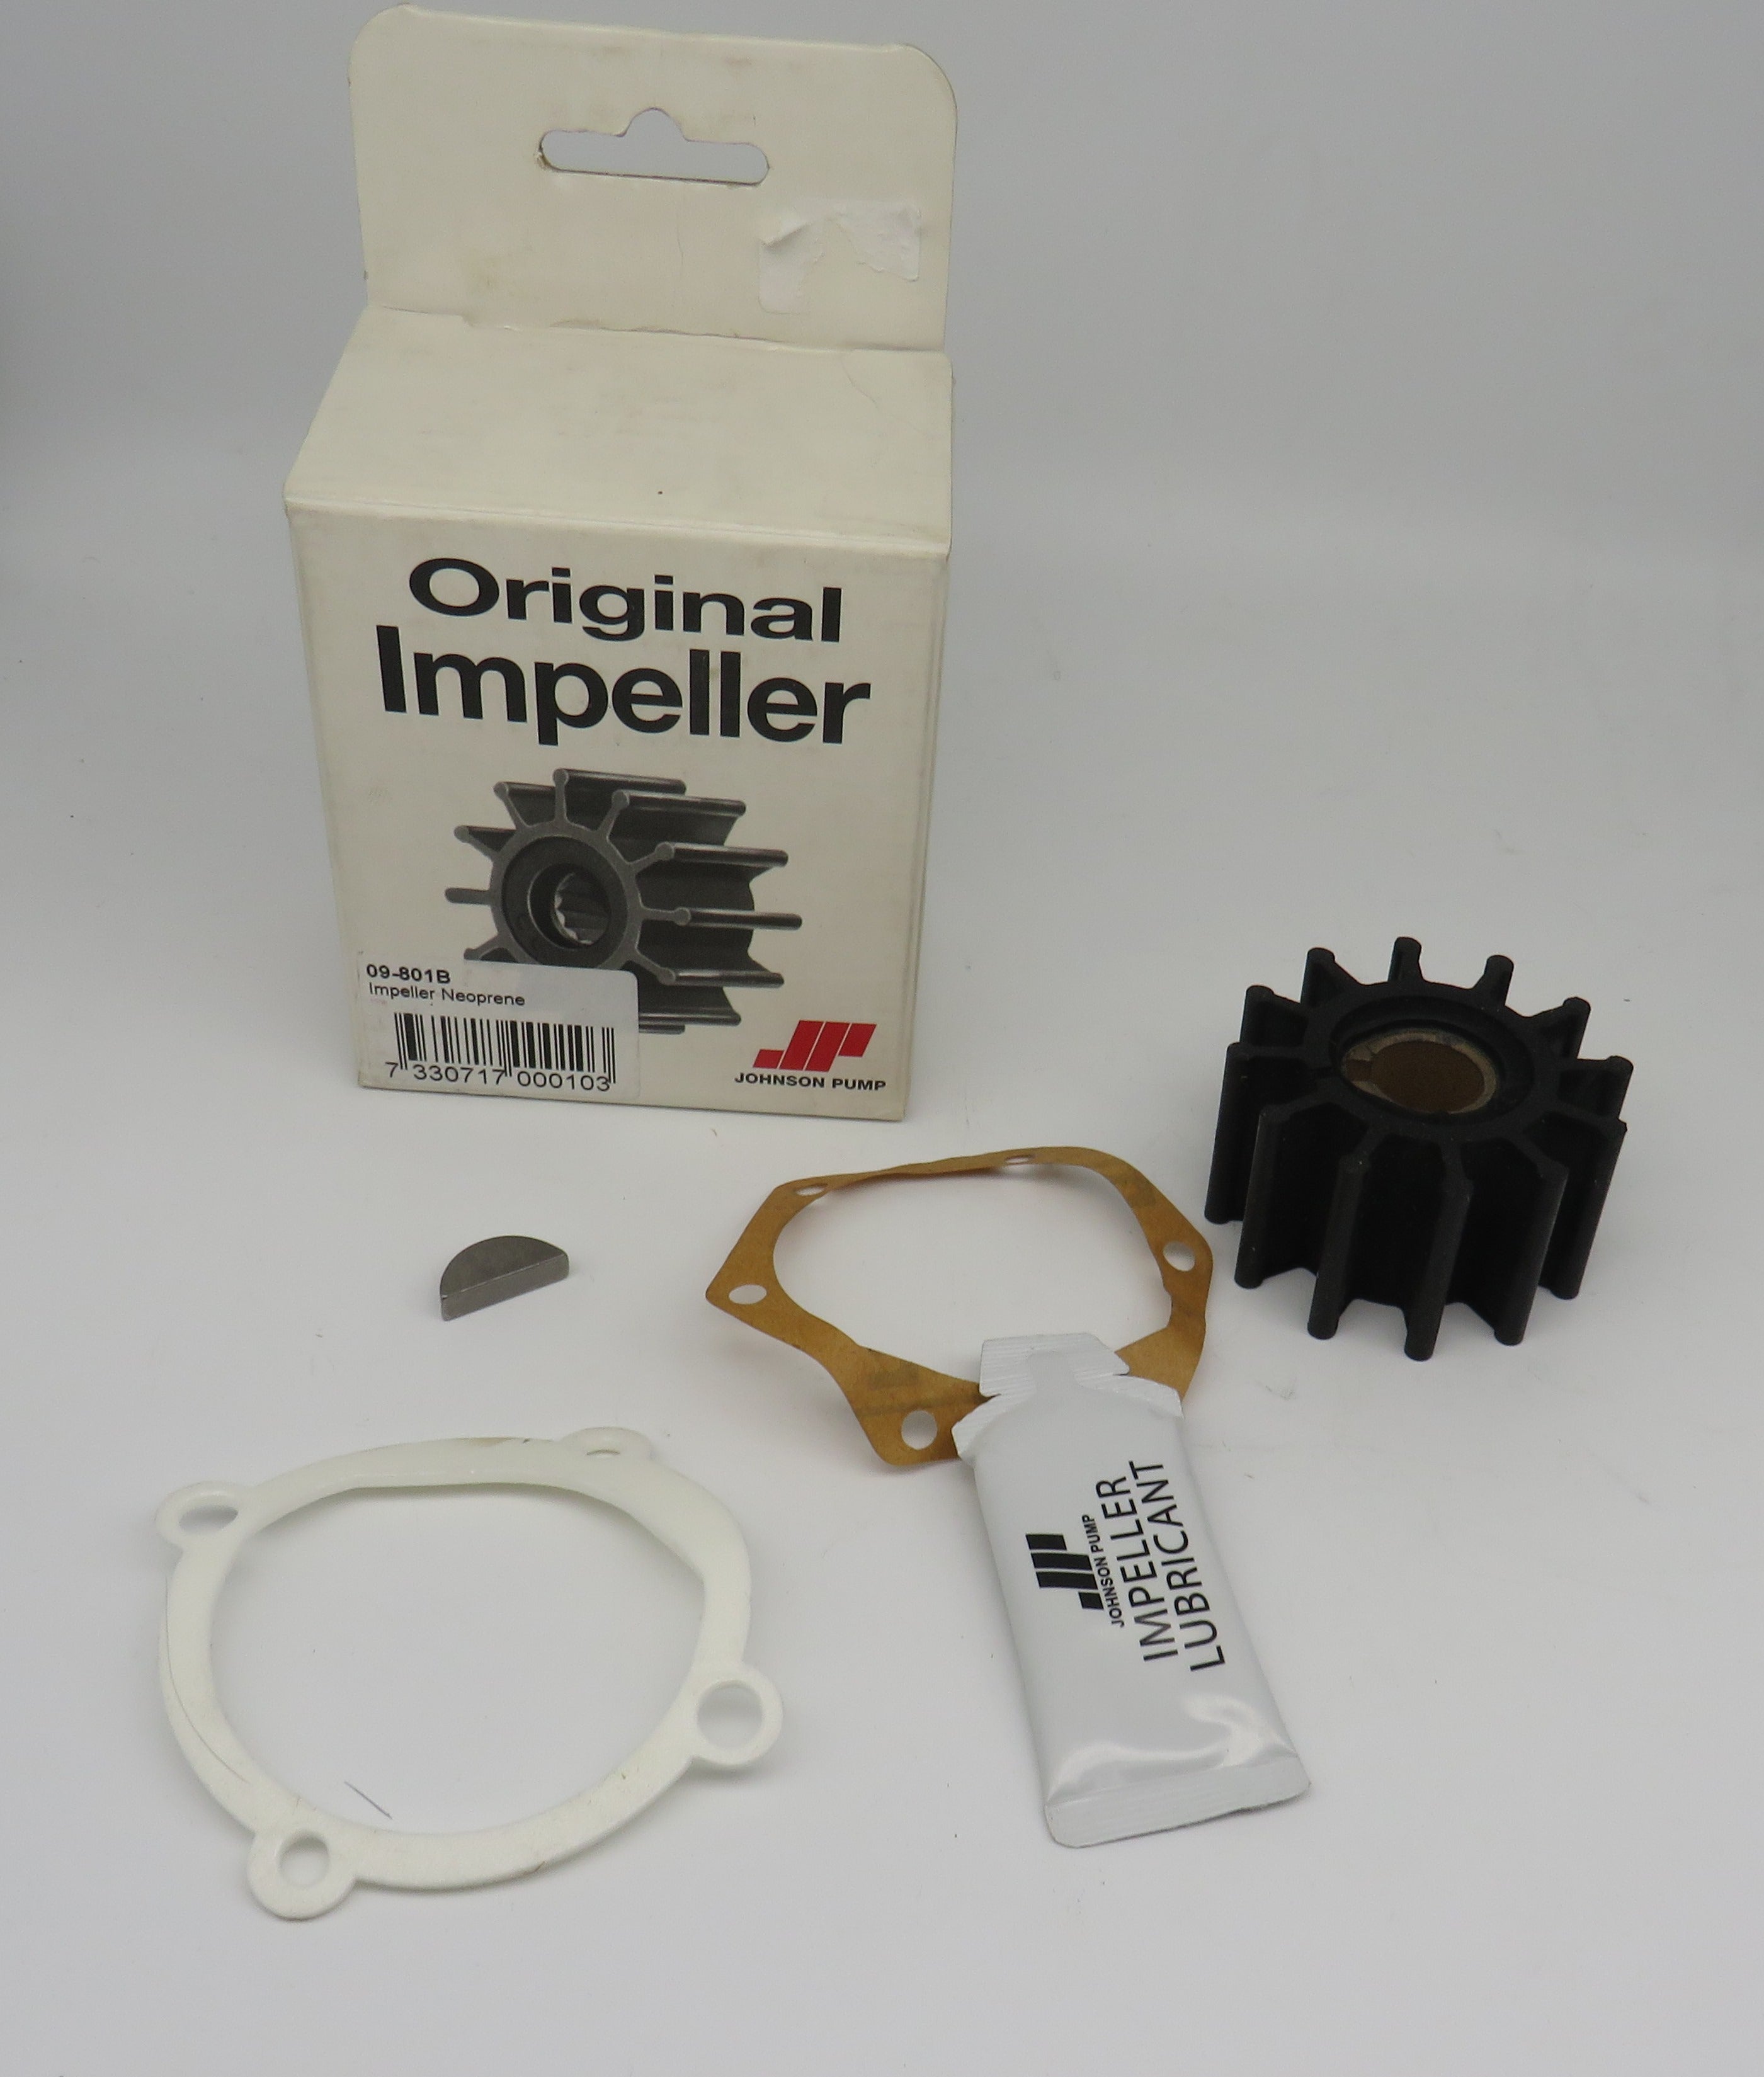 09-801B Johnson Pump Impeller Kit